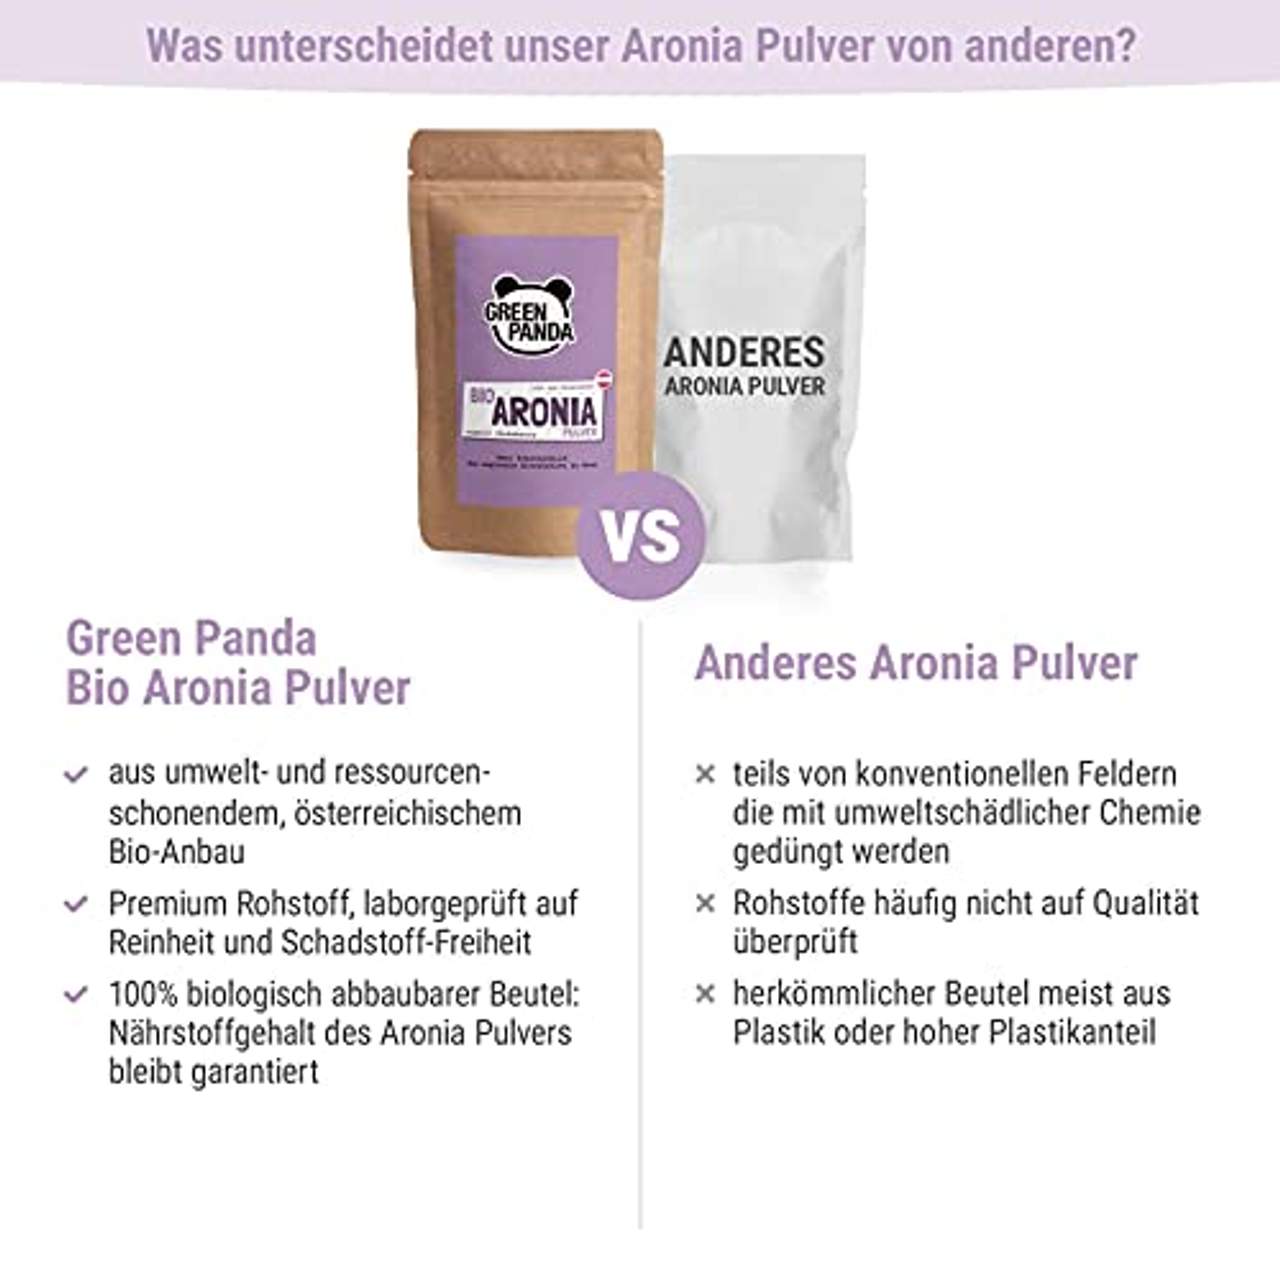 Bio Aronia Pulver aus österreichischem Anbau